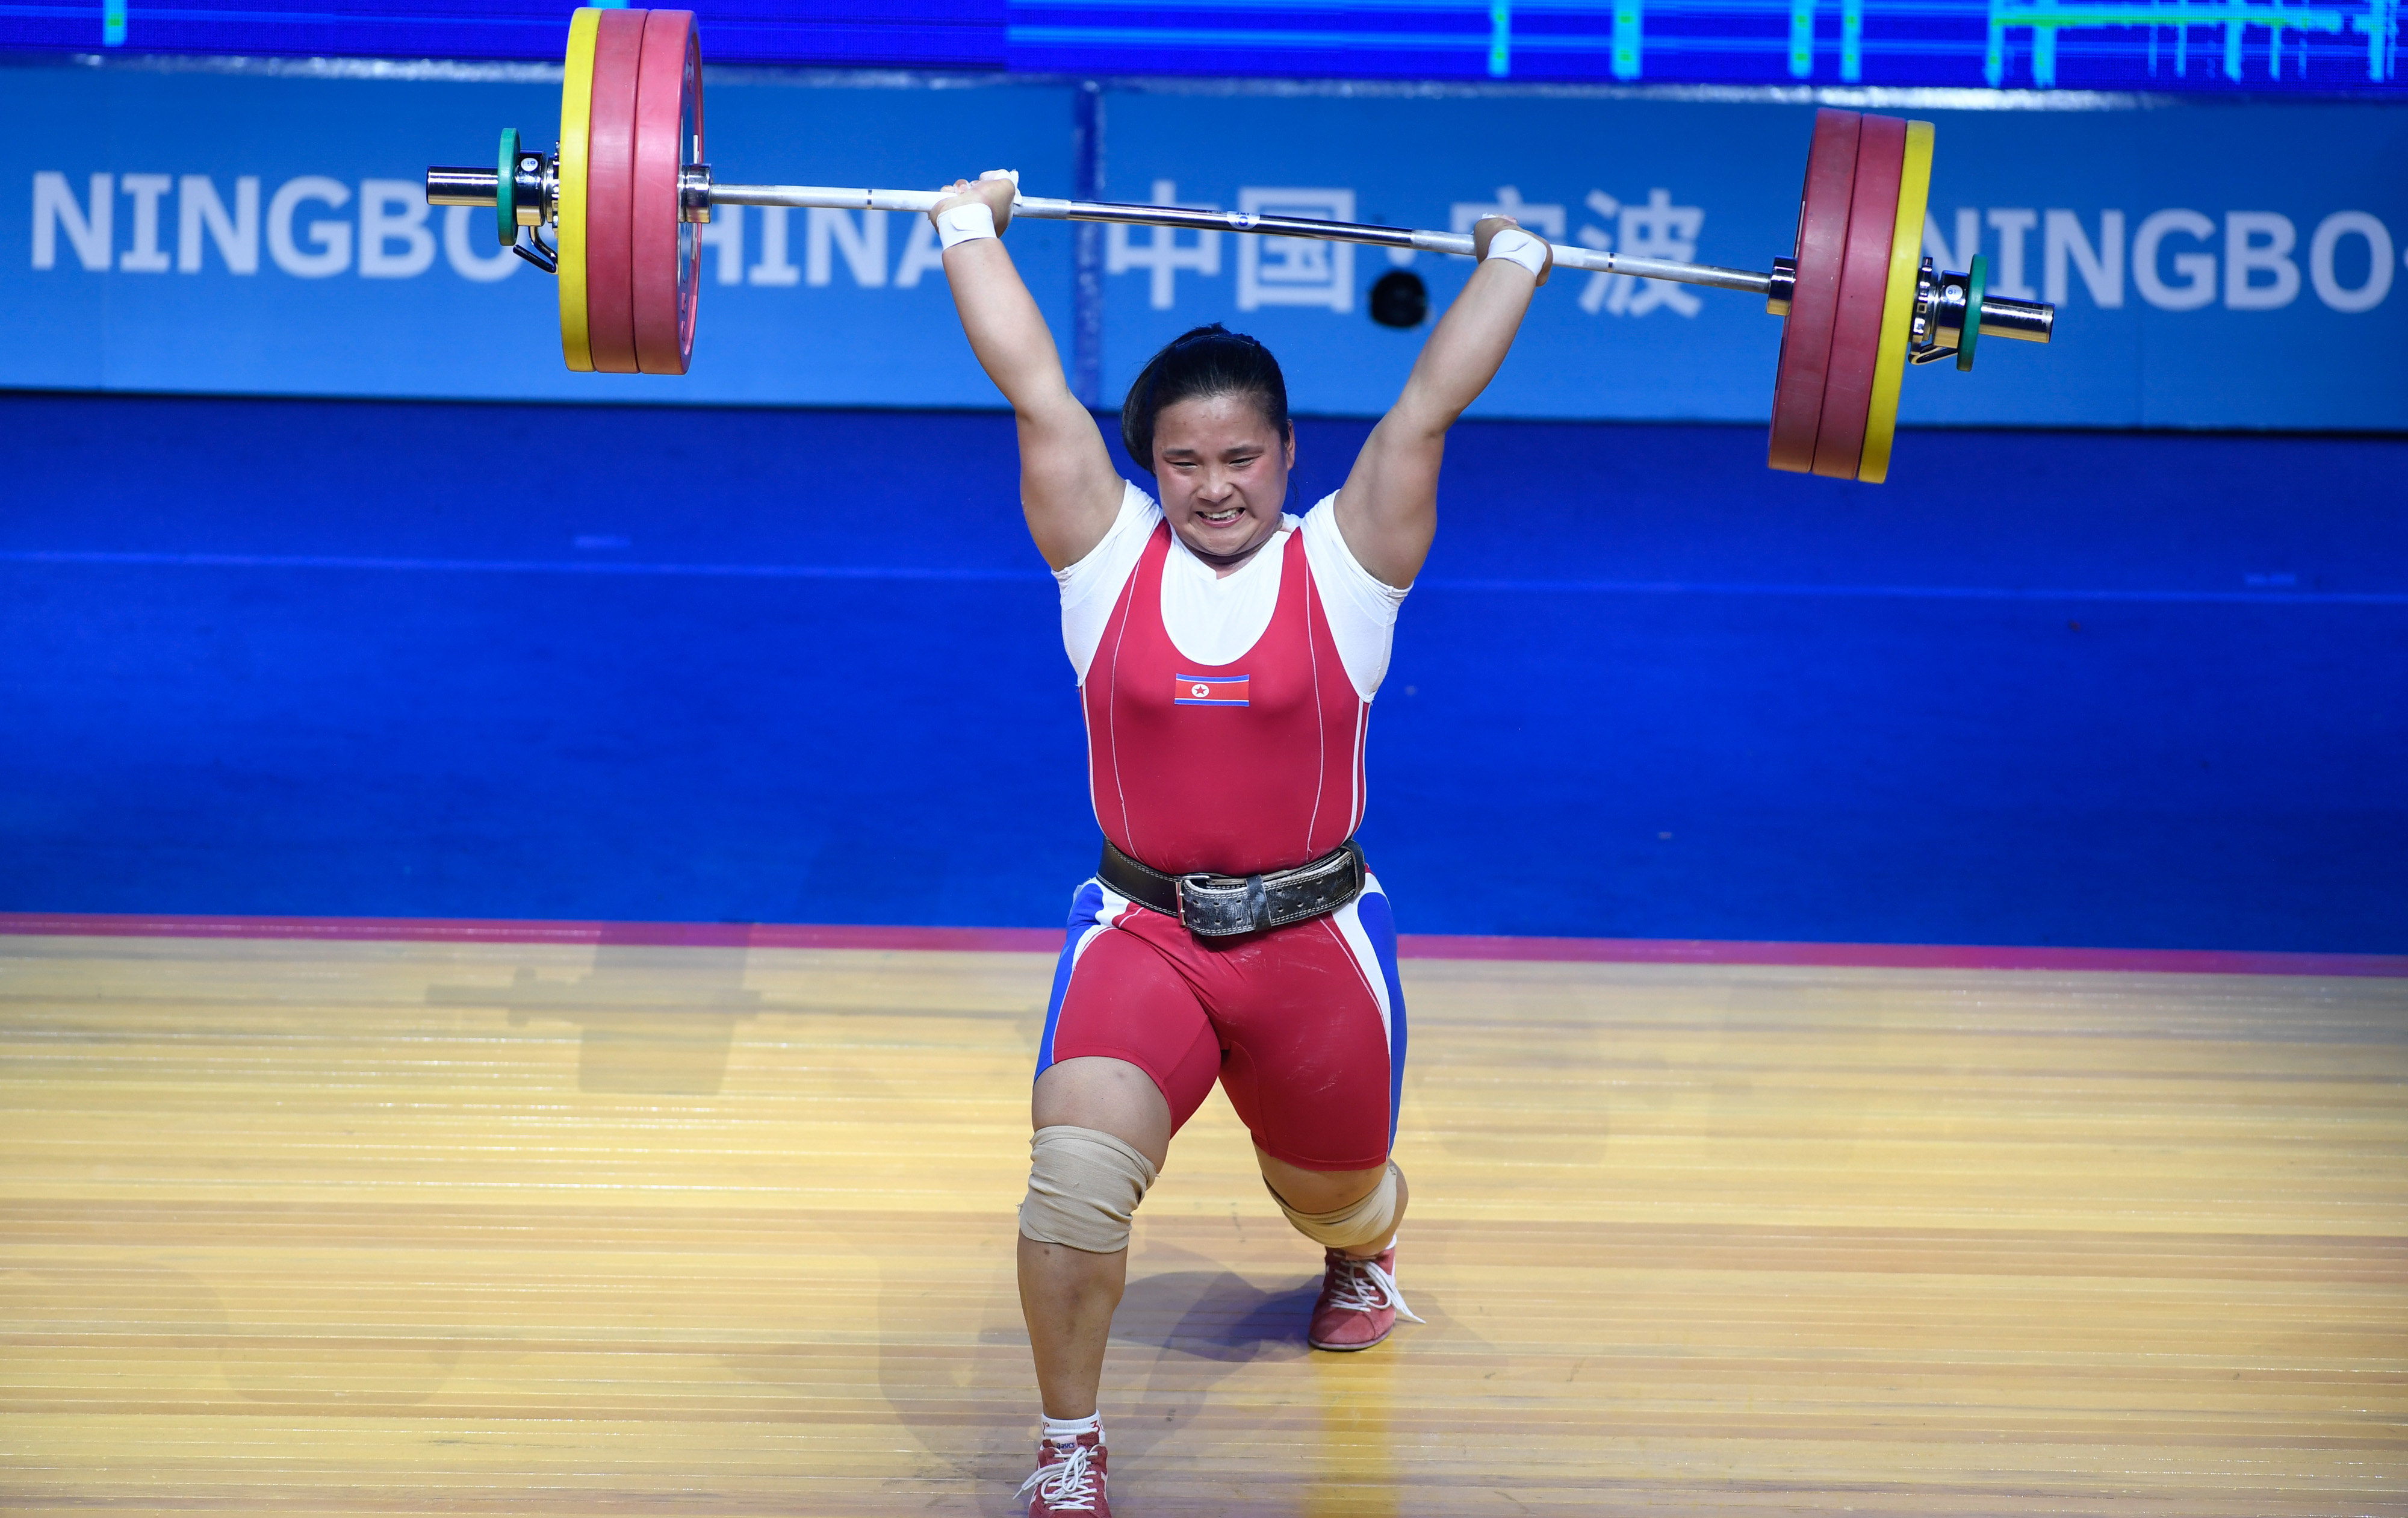 举重——亚锦赛:女子87公斤级赛况